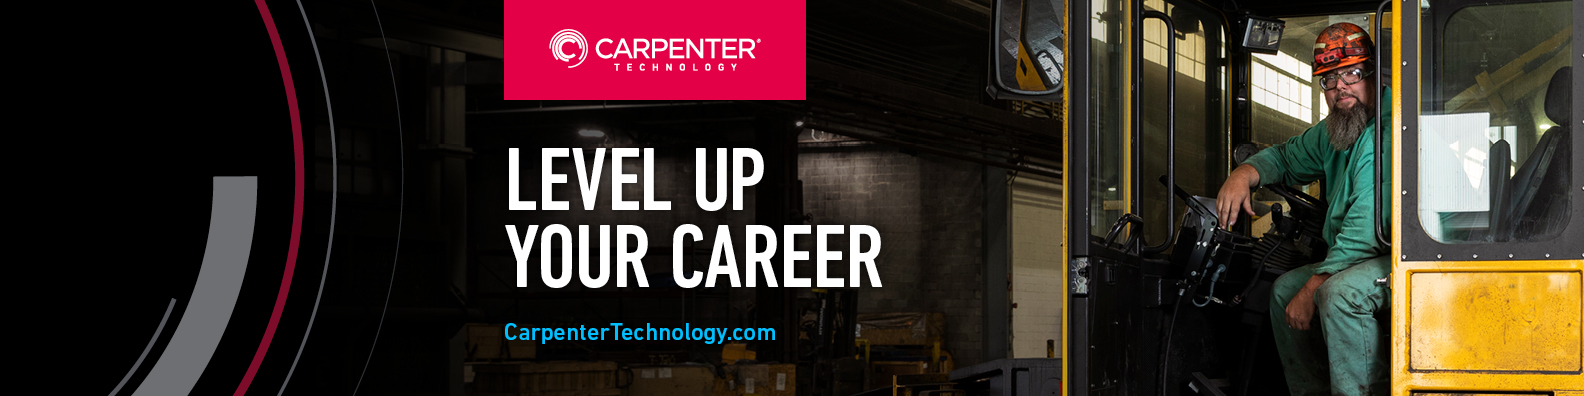 Carpenter Technology LinkedIn Banner